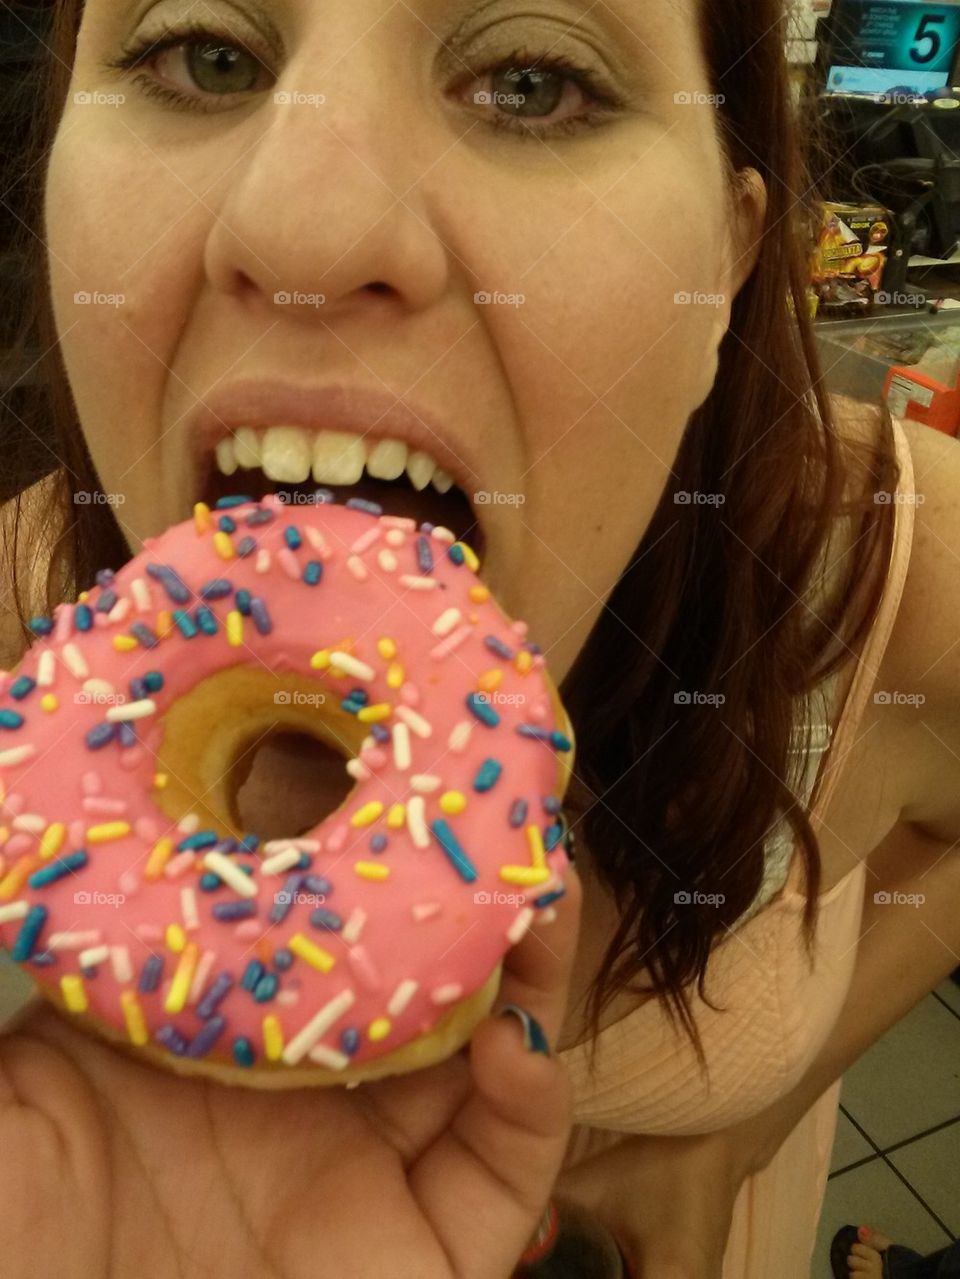 donut bite